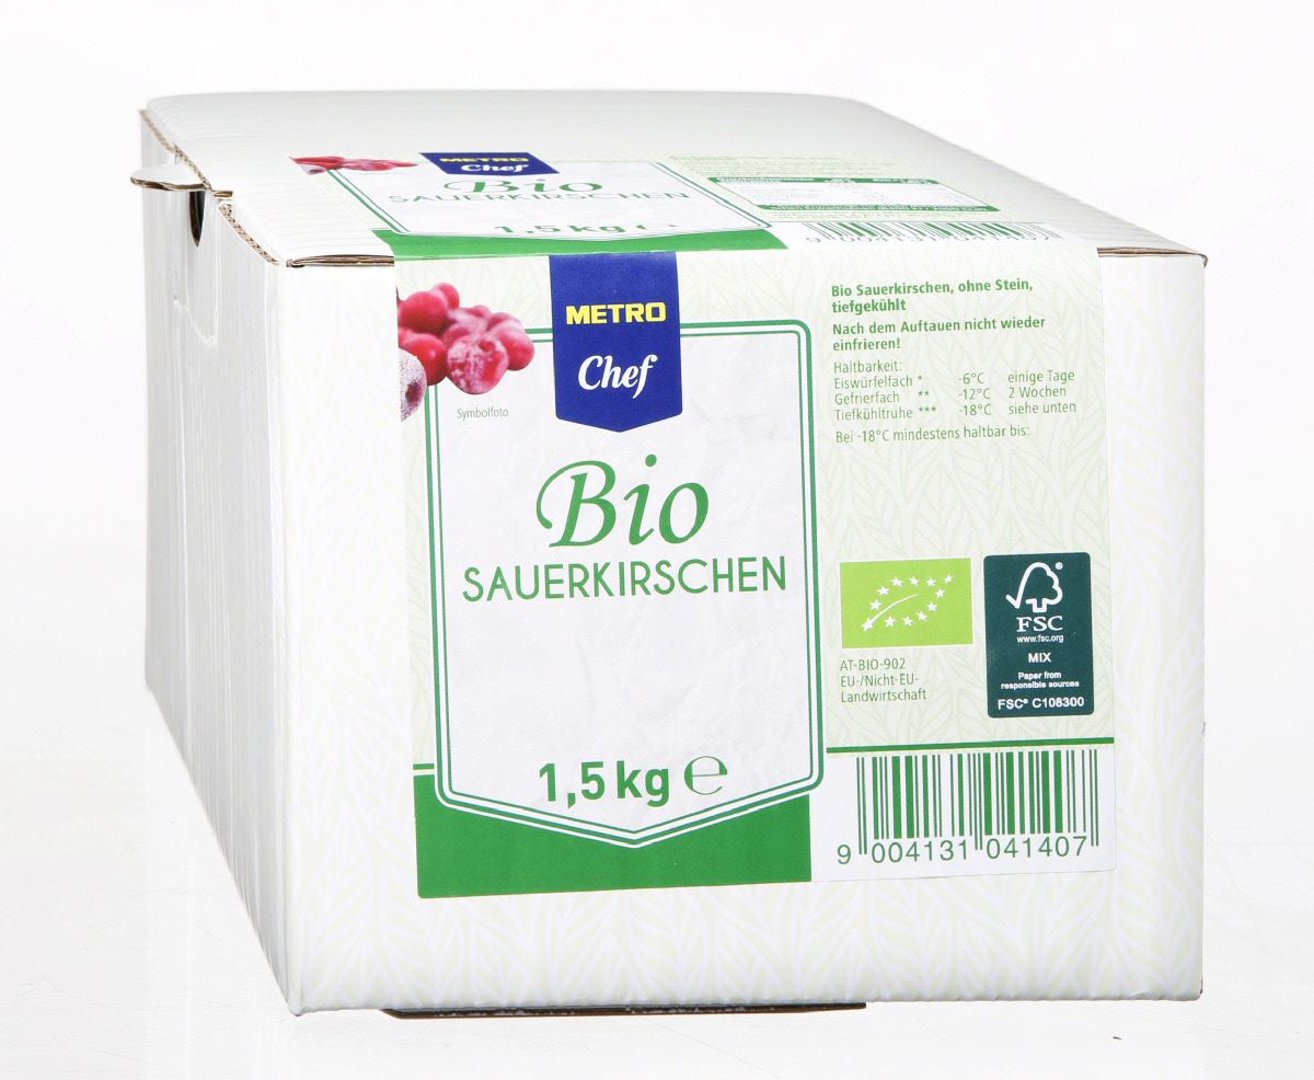 METRO Chef Bio - Sauerkirschen tiefgefroren - 1,5 kg Packung